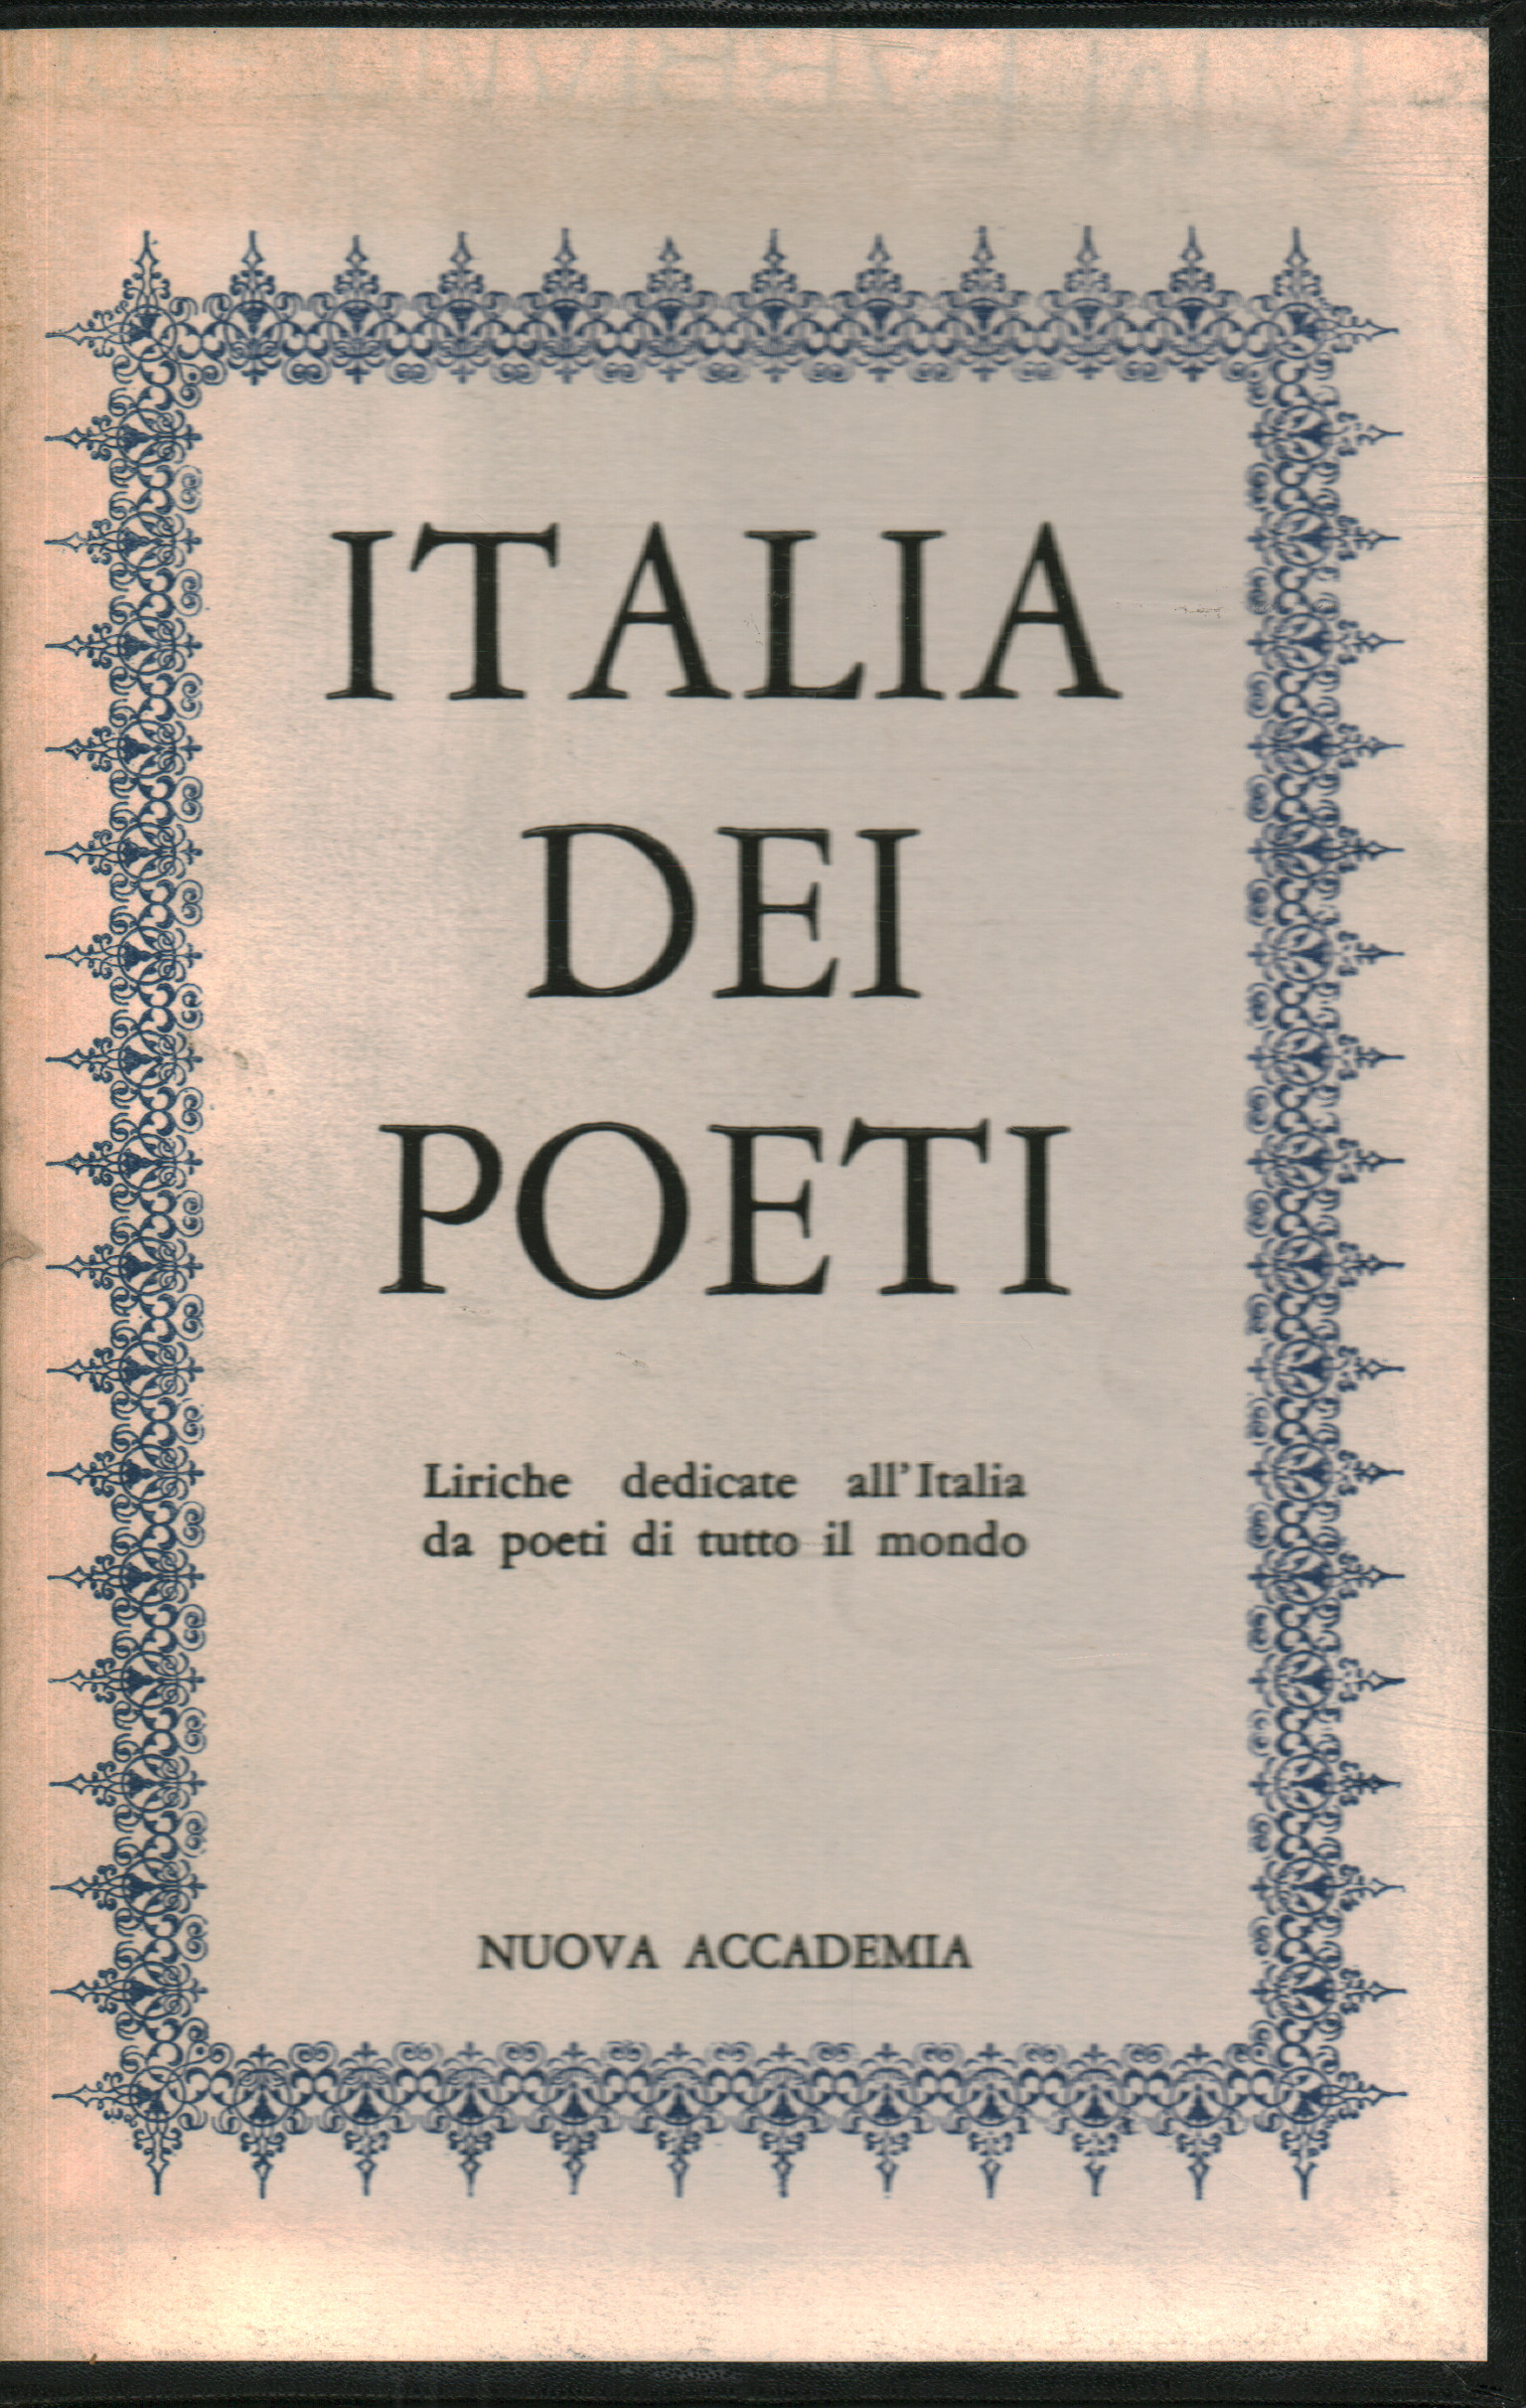 L'Italia dei poeti, AA.VV